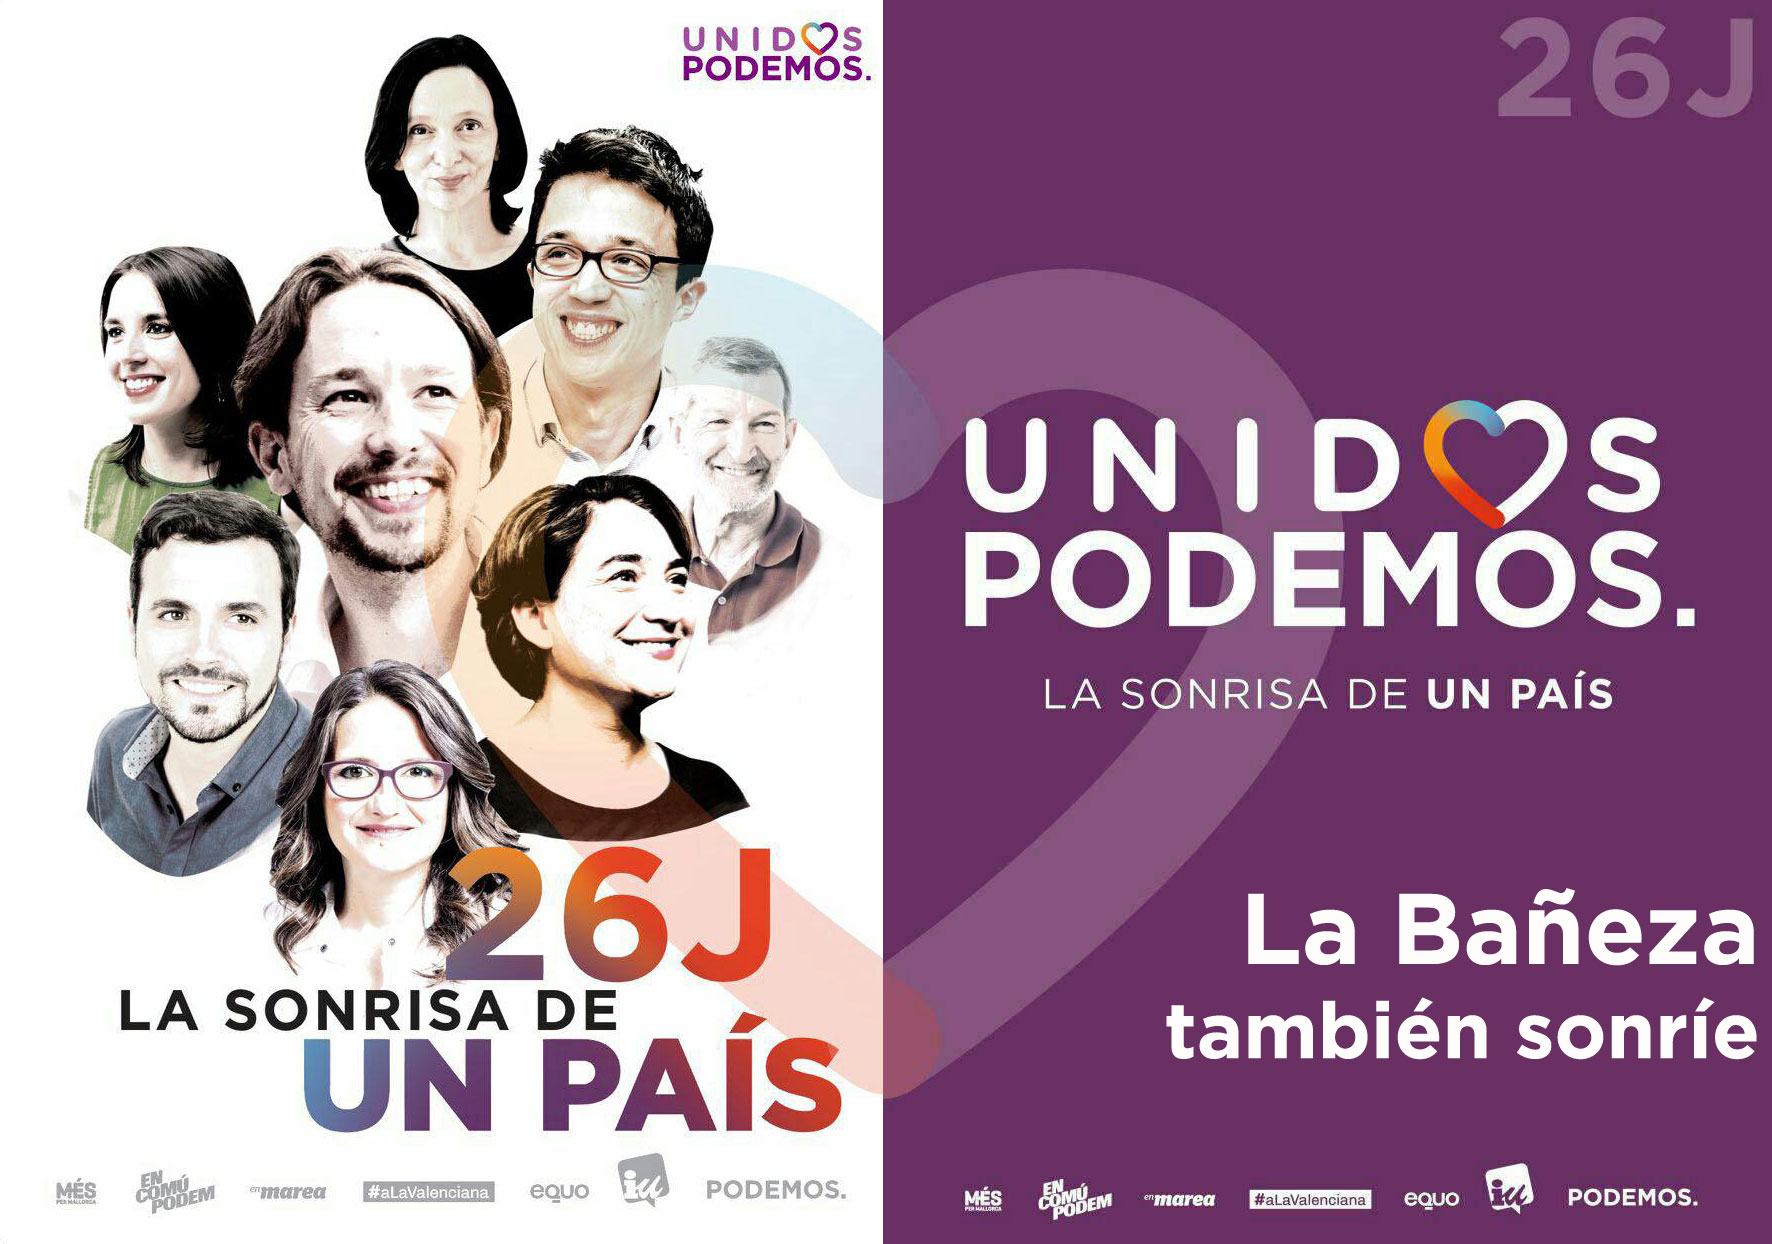 Unido-Podemos-Labaneza